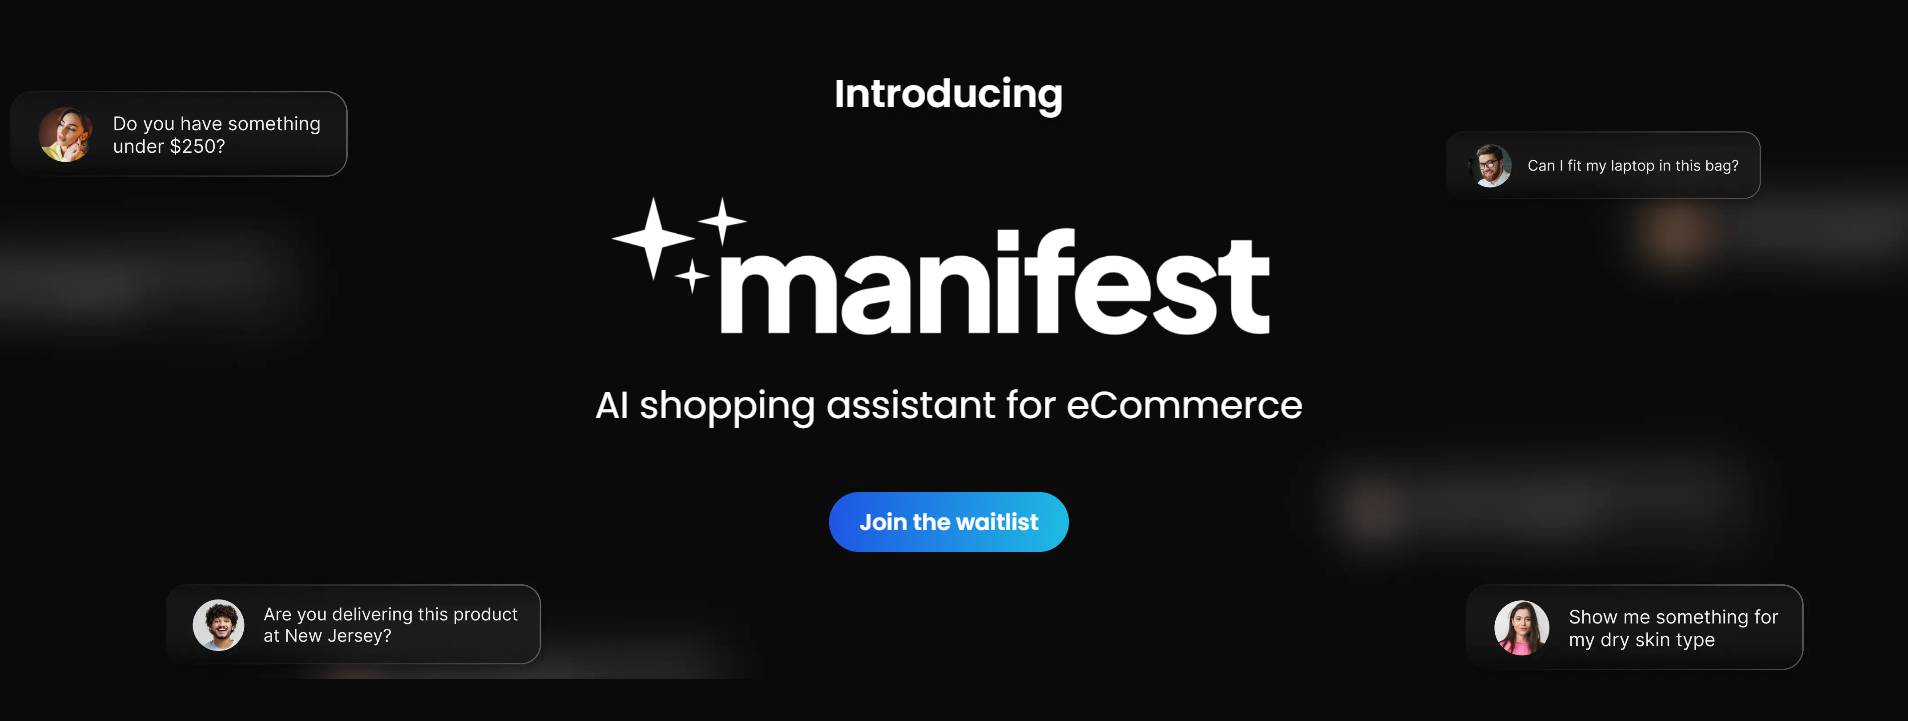 Manifest AI: una aplicación Shopify para ayudar a los compradores a encontrar productos e información relevantes